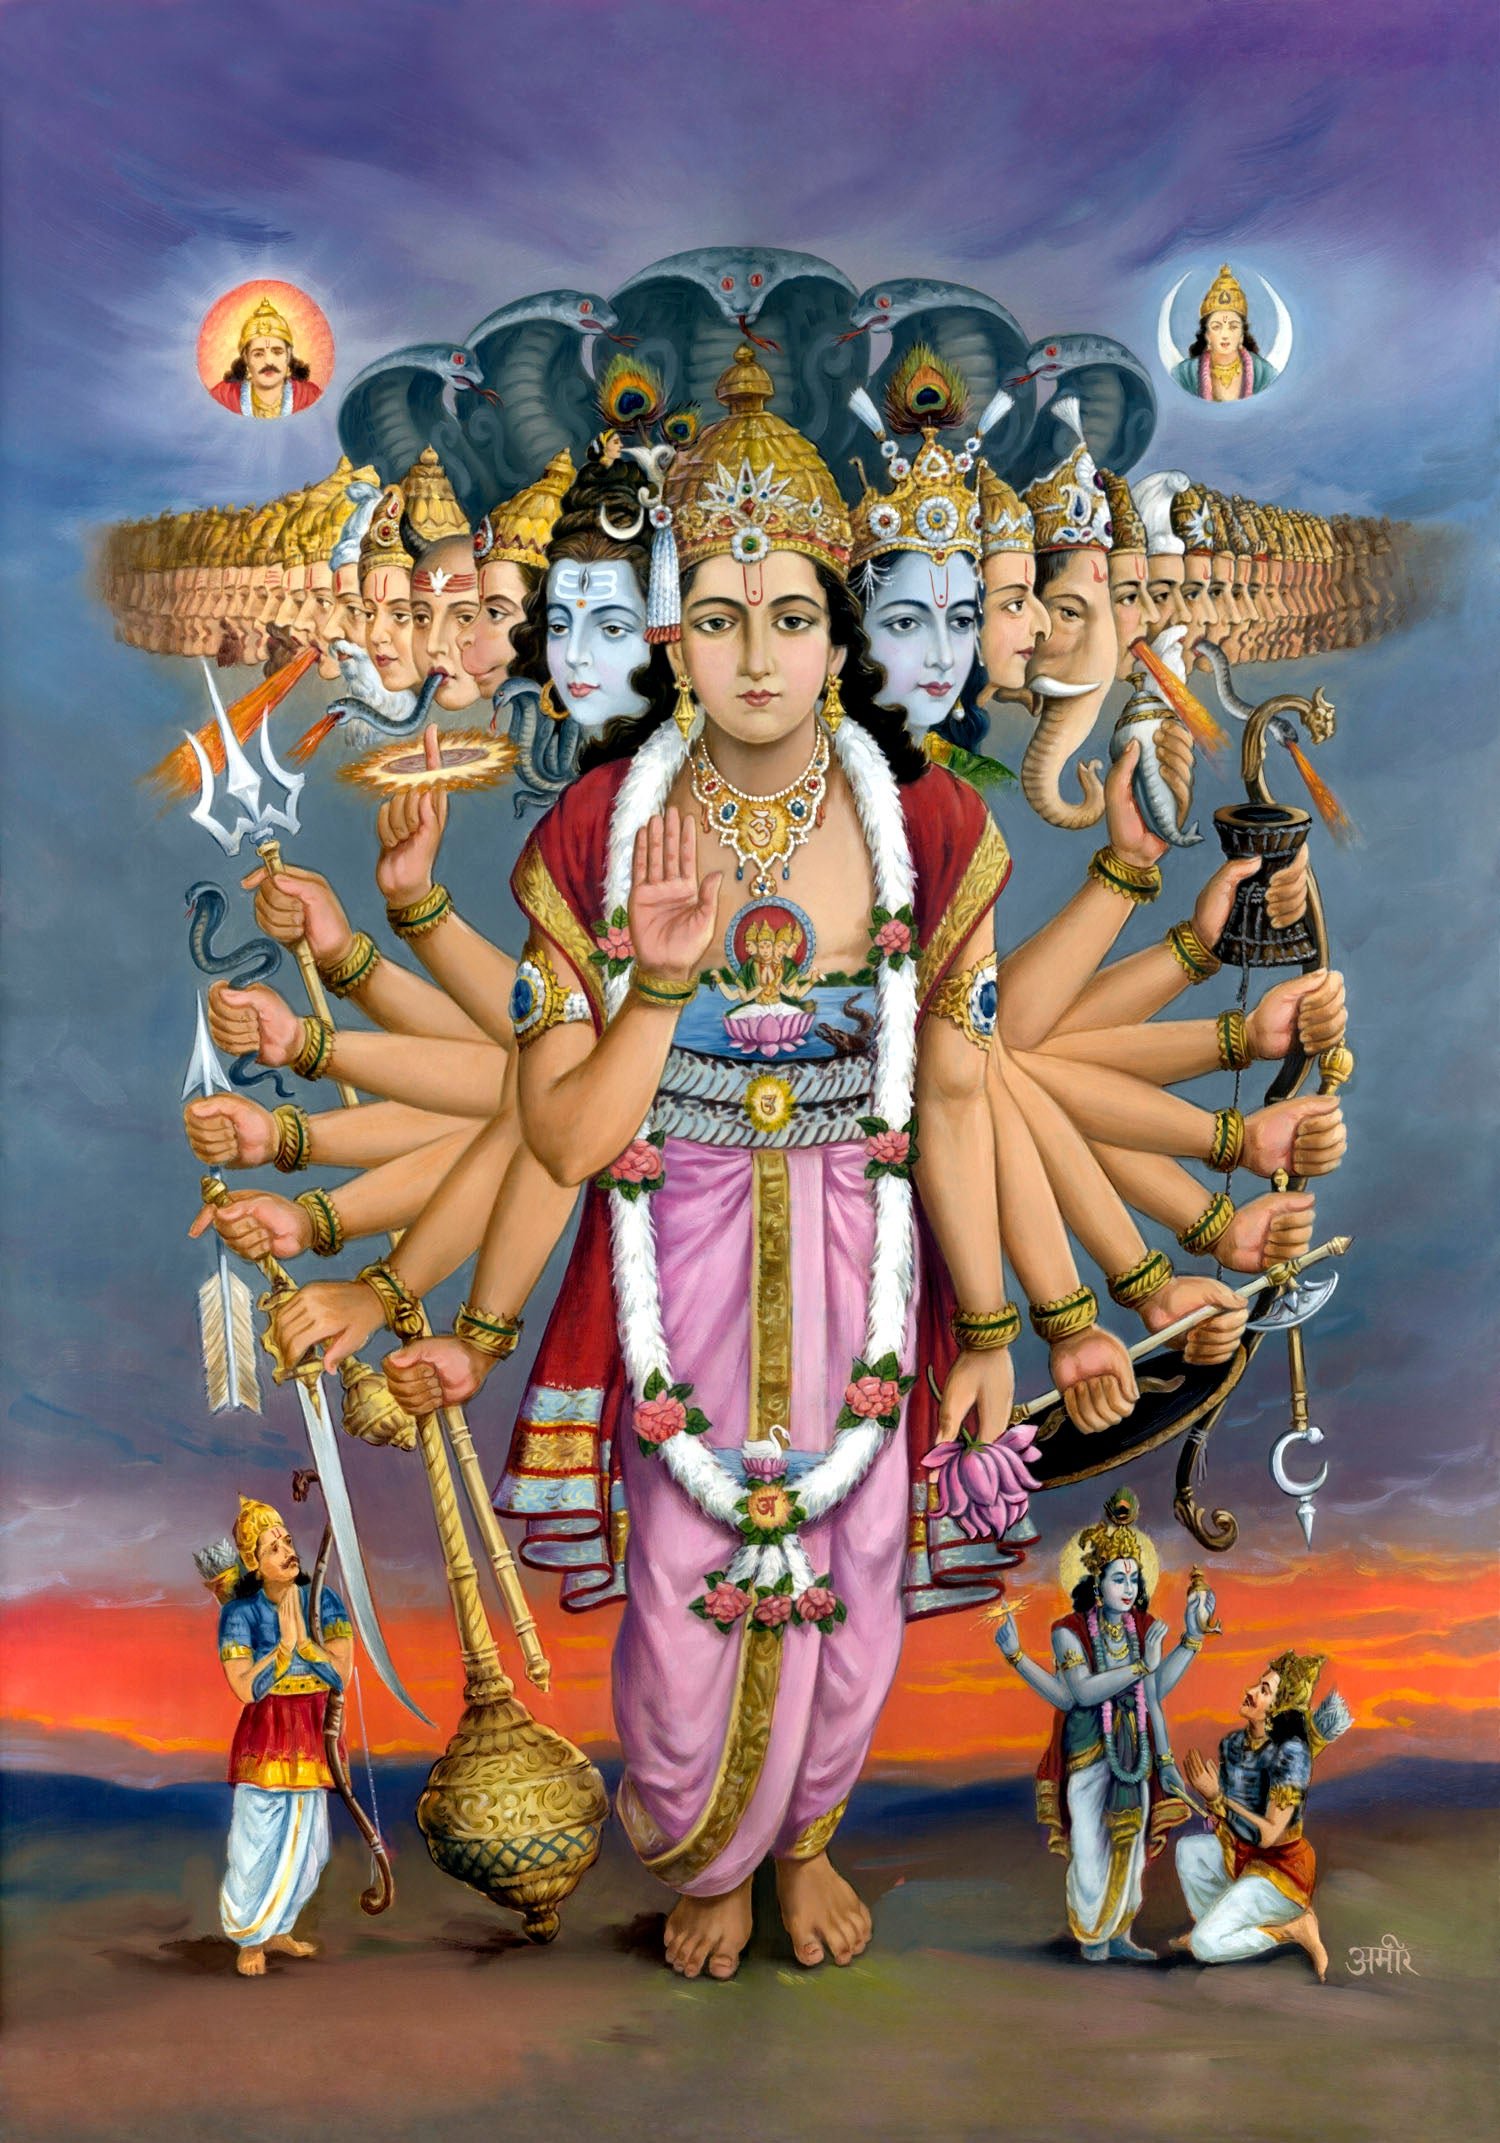 1440x900 Lord Krishna Krishna Virat Swaroop Wallpaper Hd Images